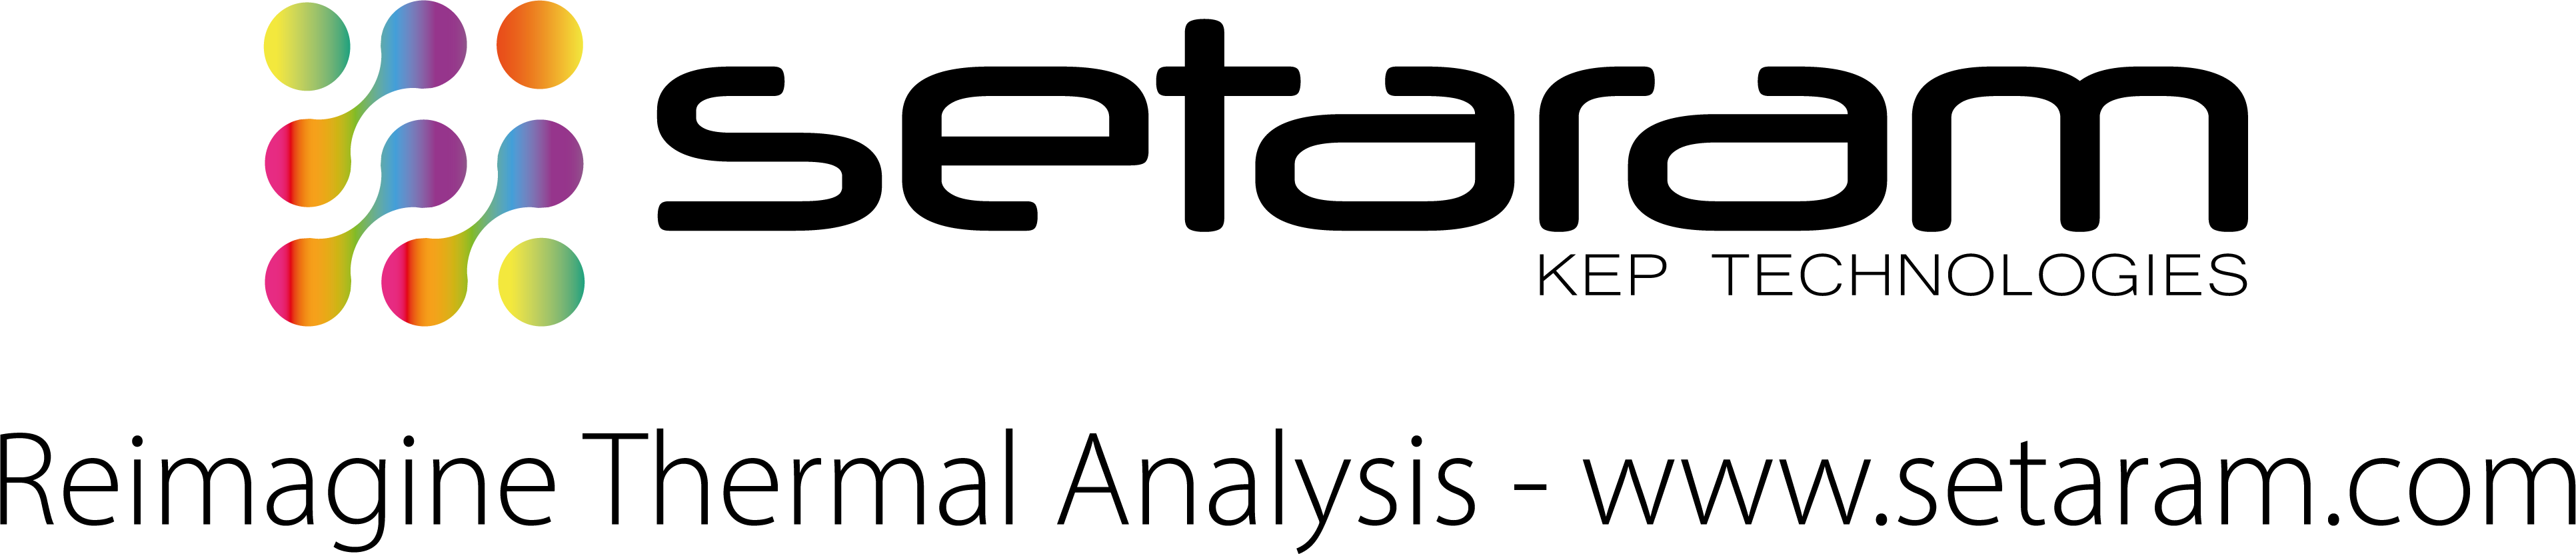 website CMJN Blackfont Setaram logo 2019